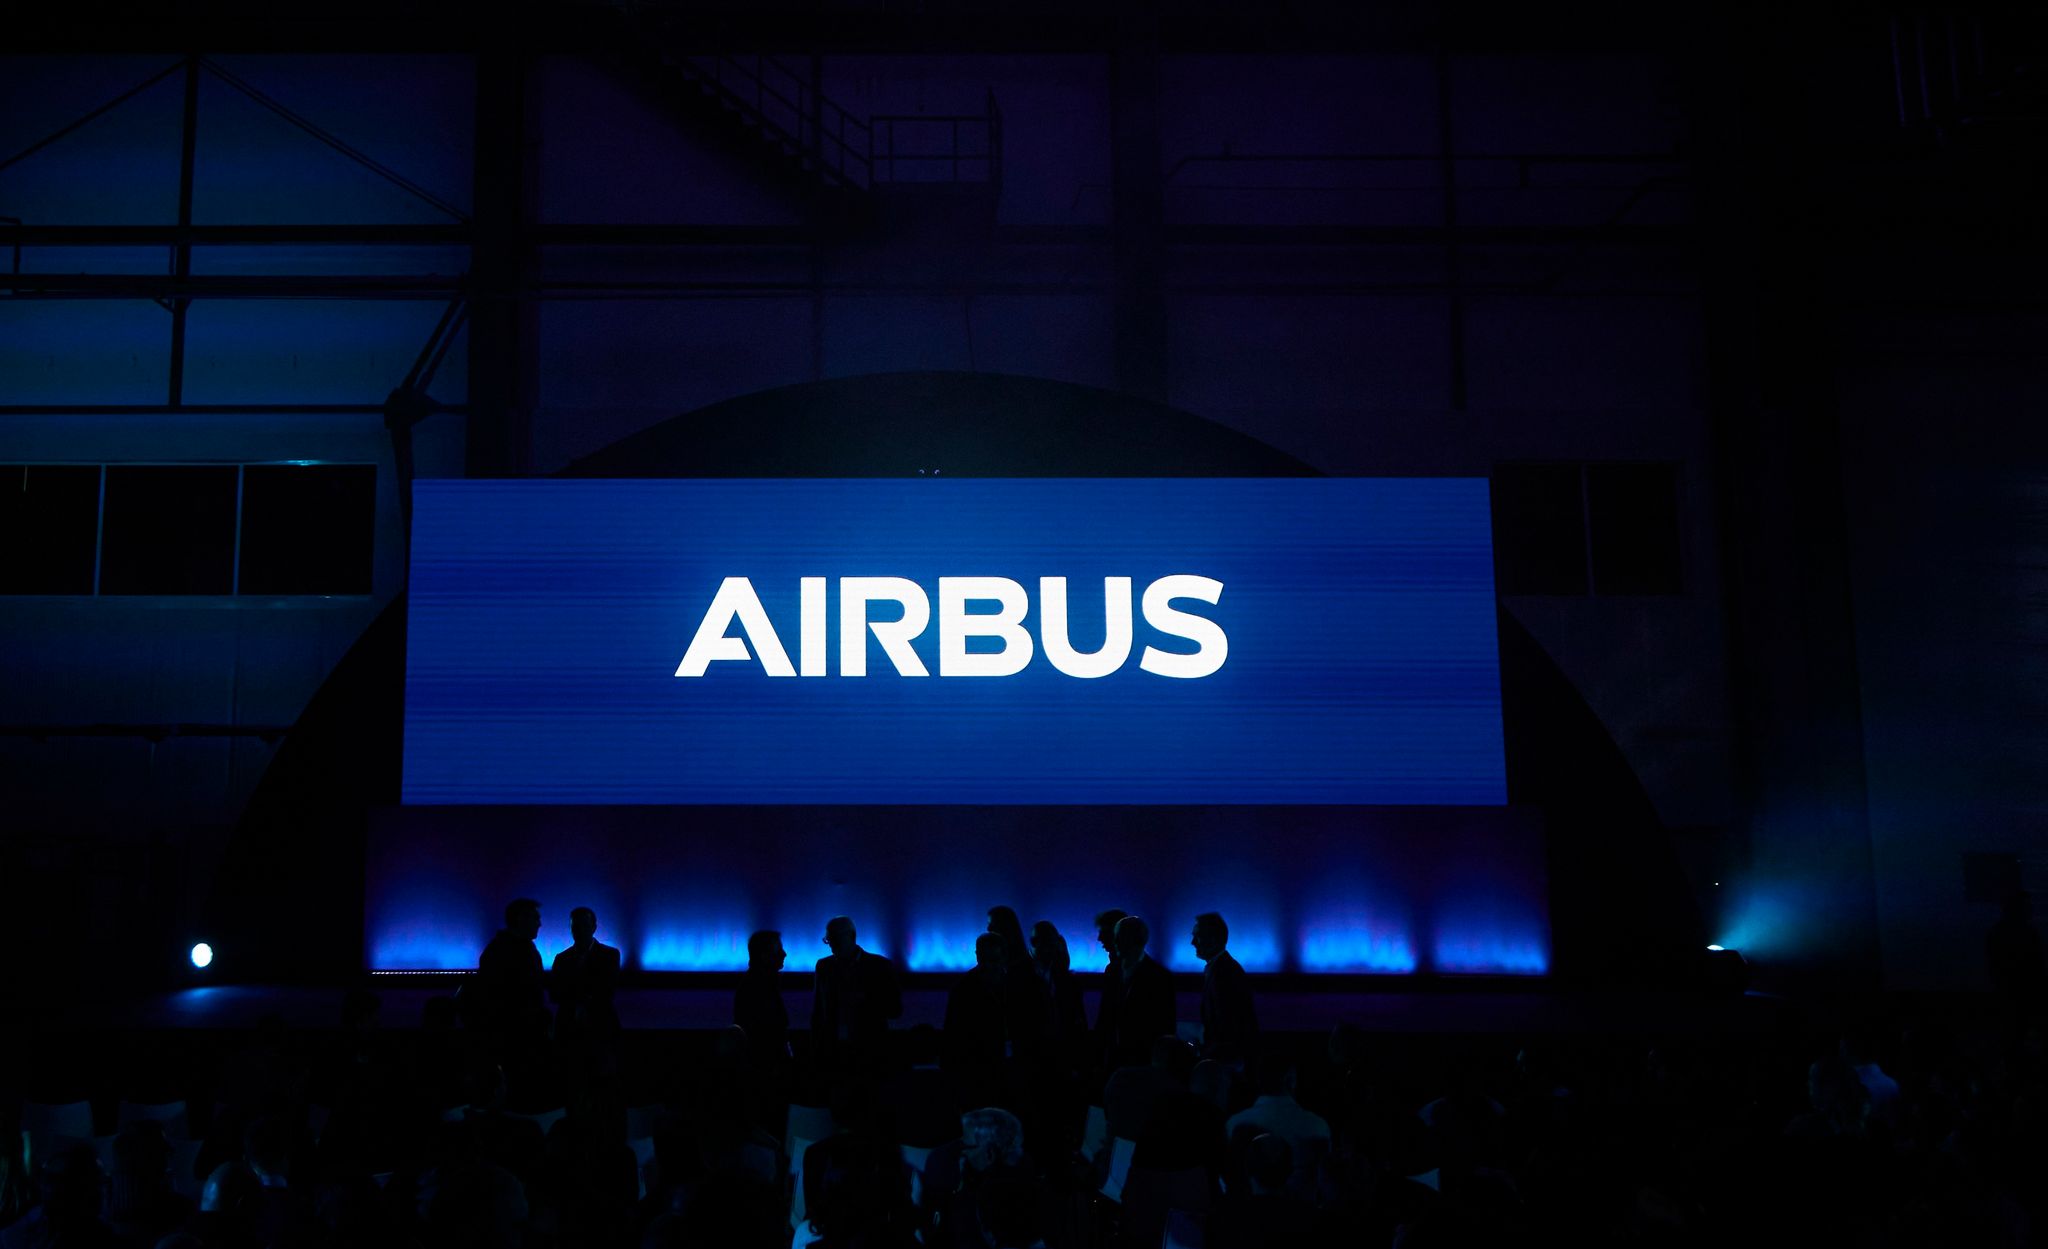 Airbus baut für mehr als zwei Milliarden Euro zwei neue Telekommunikationssatelliten für die Bundswehr. (Symbolbild)